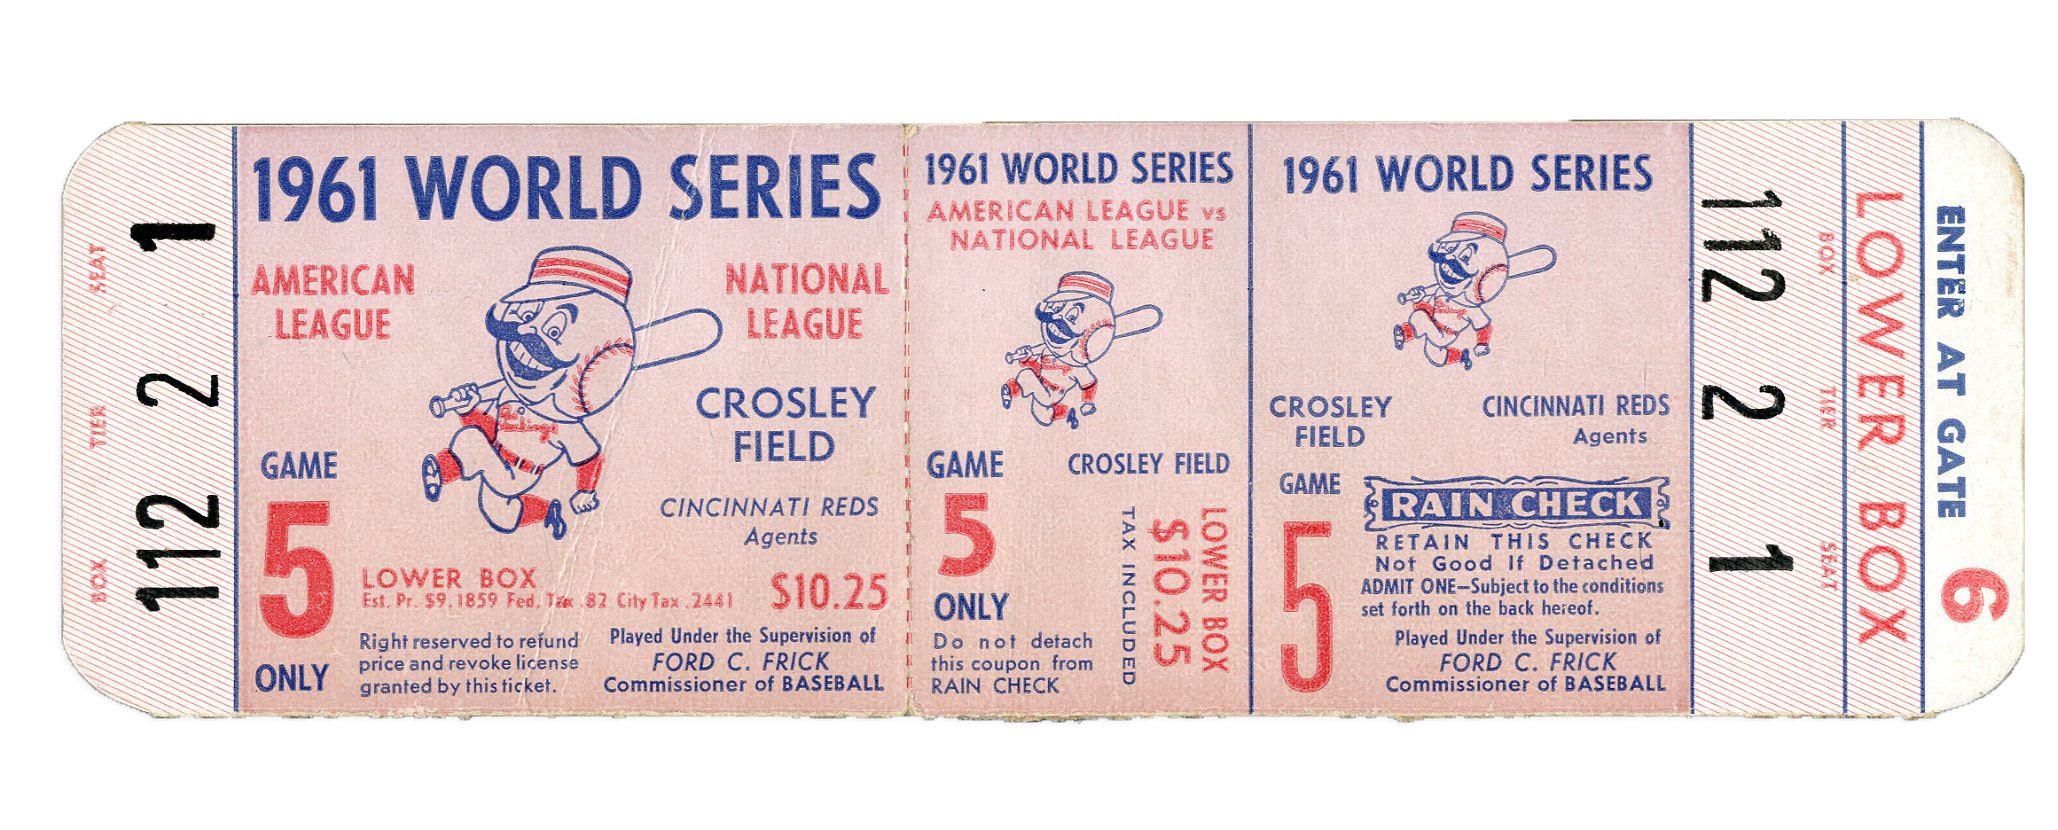 - 1961 World Series Game 5 Full Unused Ticket